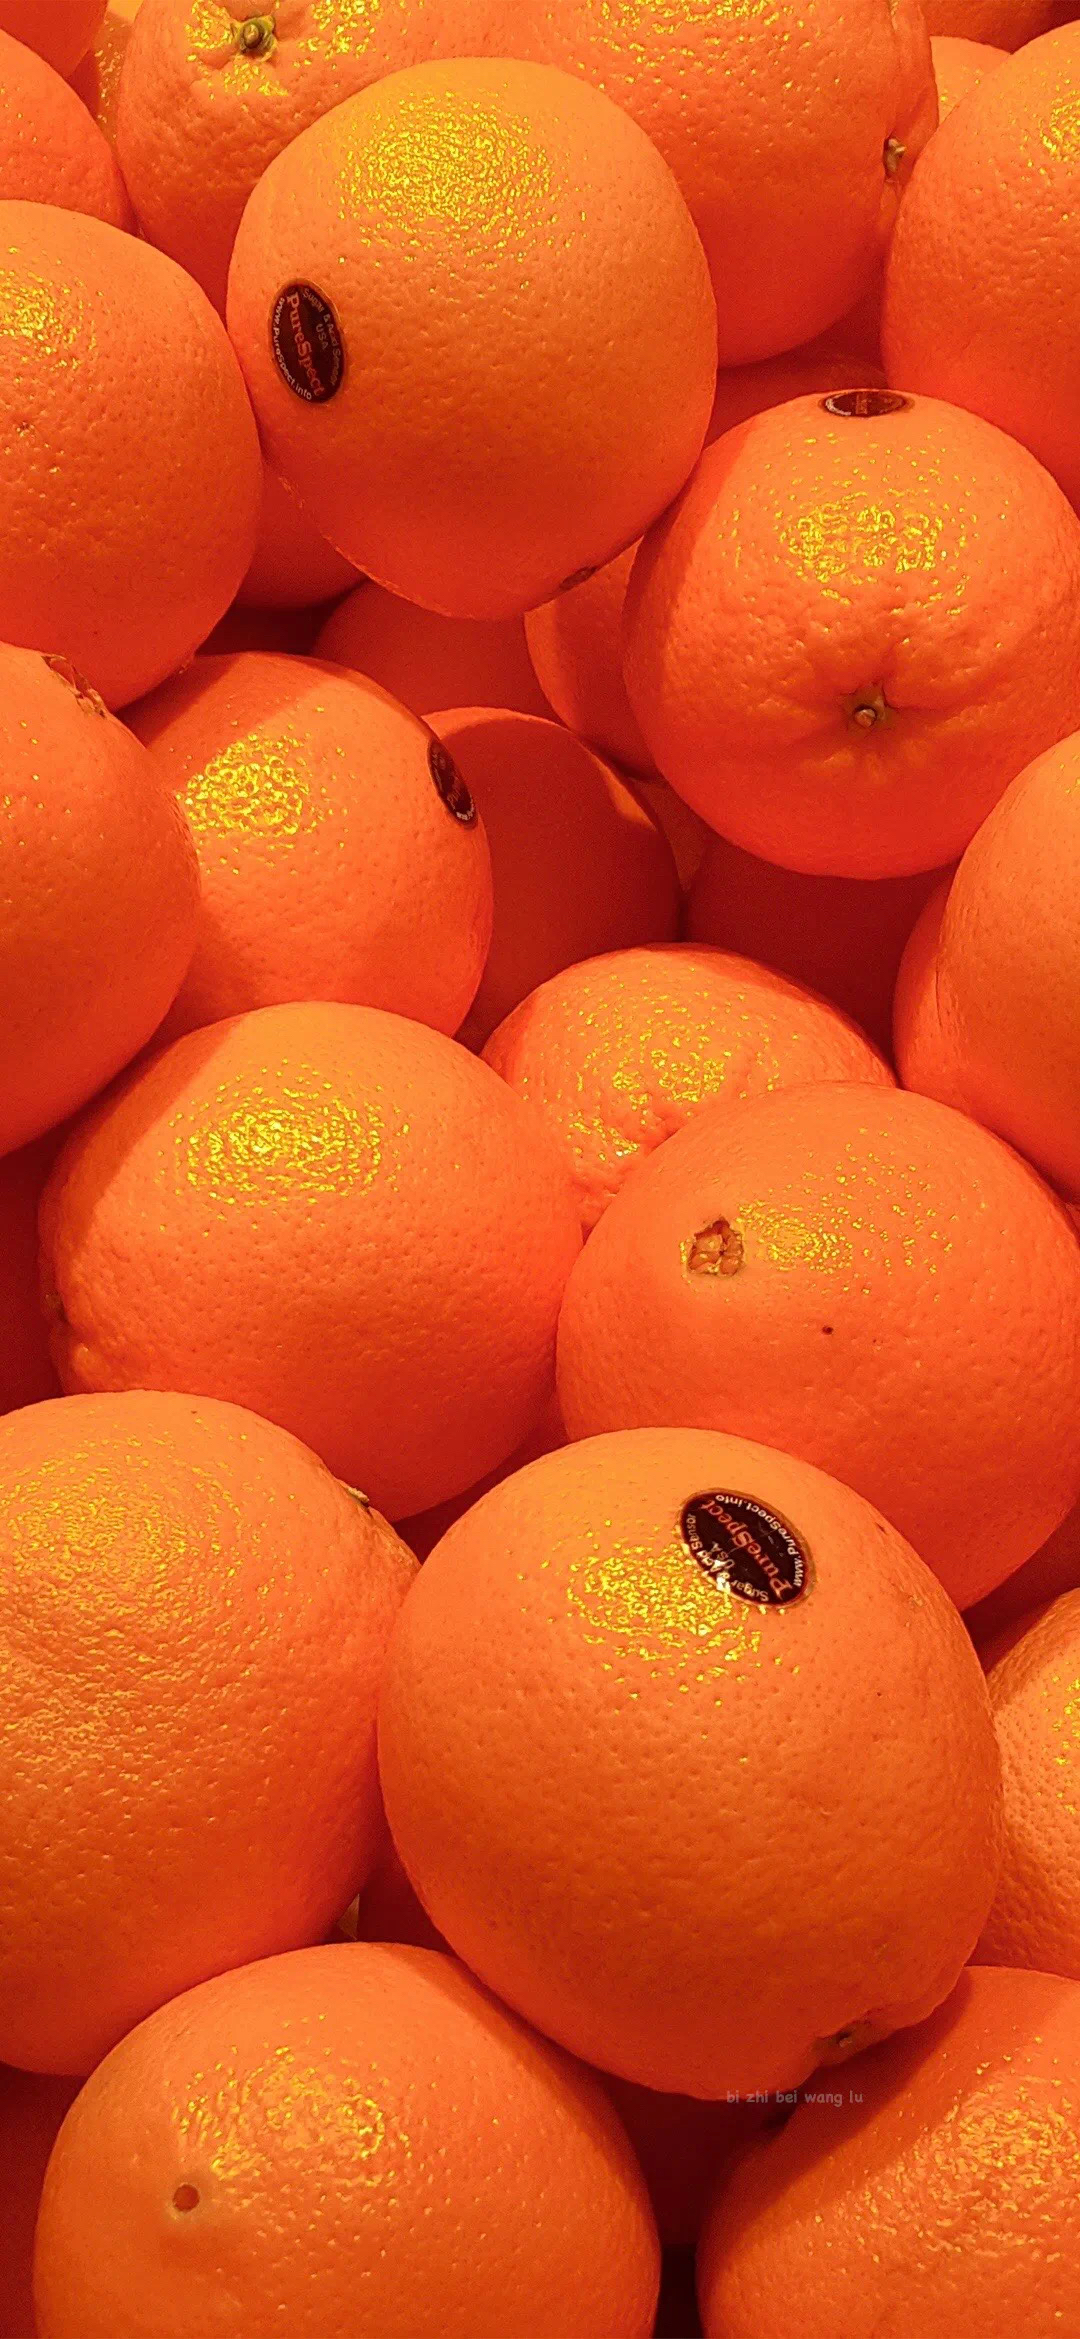 清新的橙子绘画手机壁纸 - tt98图片网